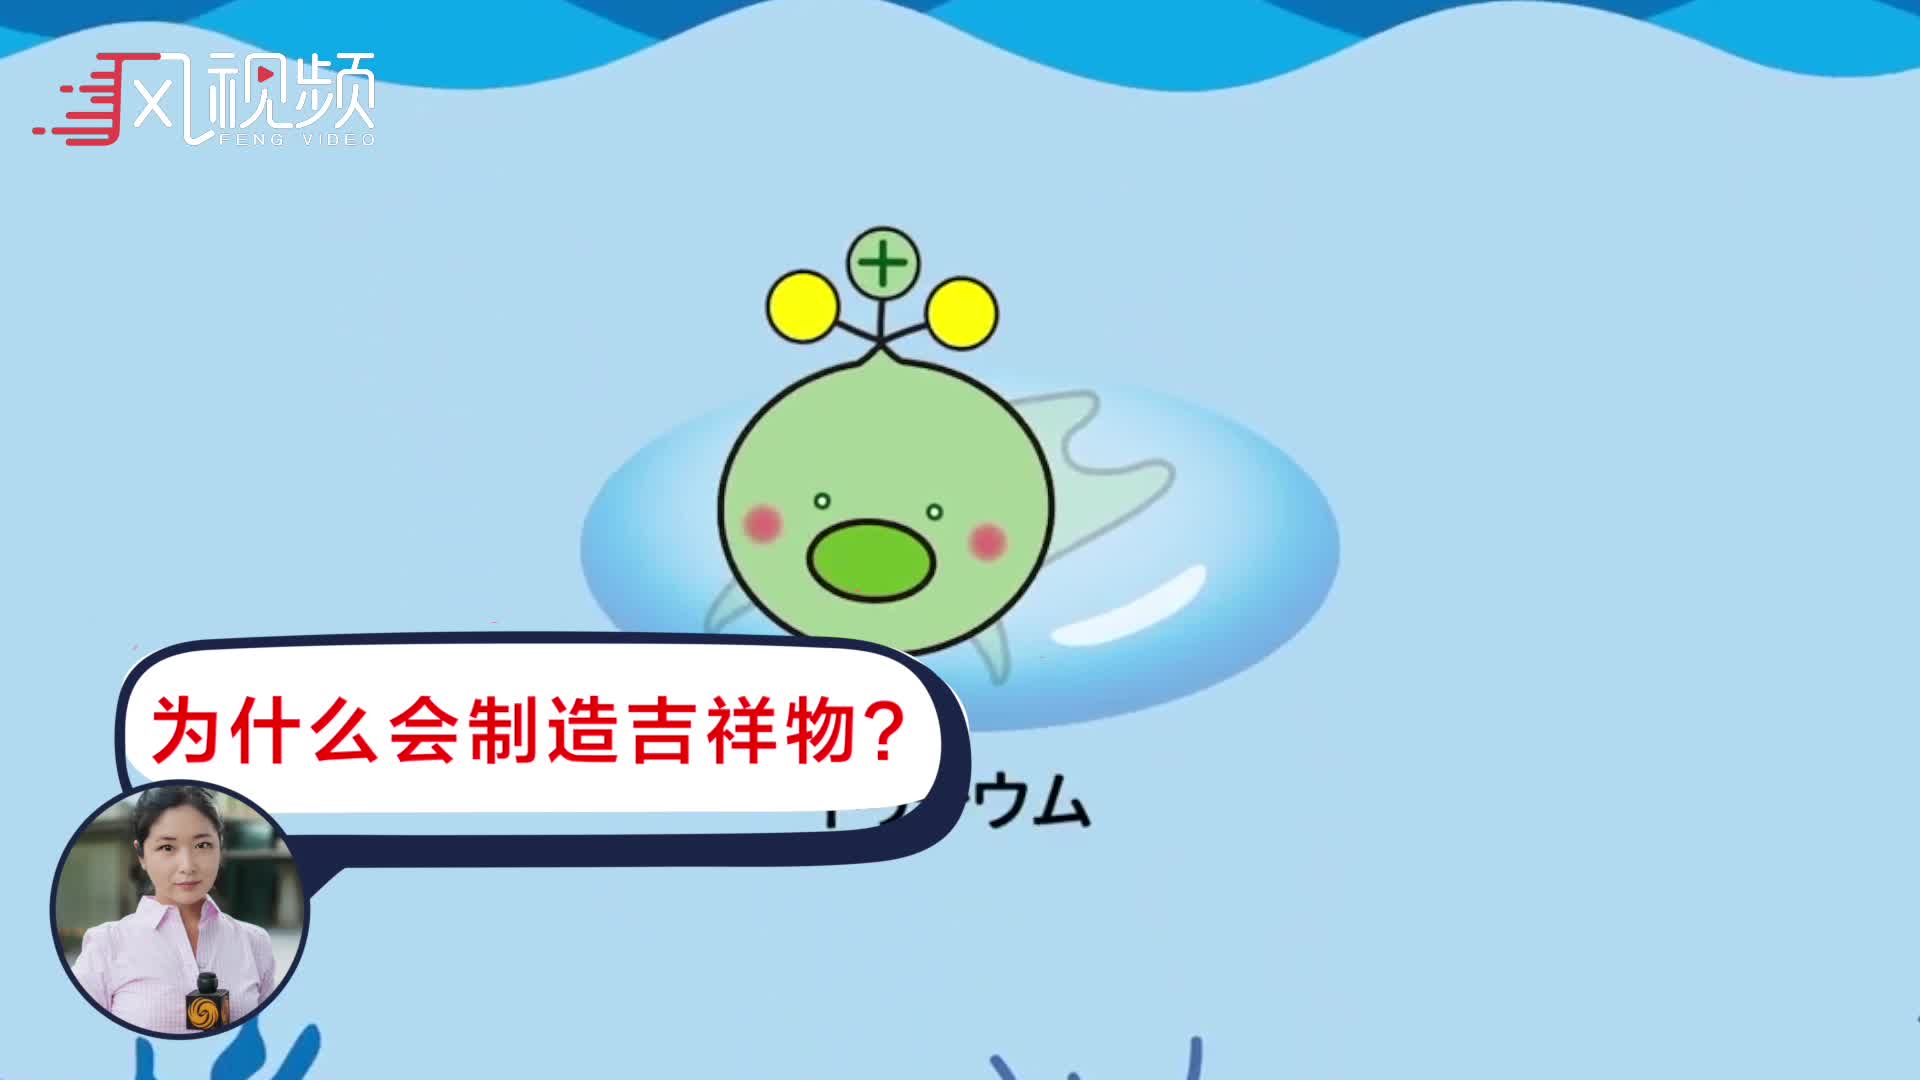 日本设计氚吉祥物宣传污水无害 日本官员:不知道依据